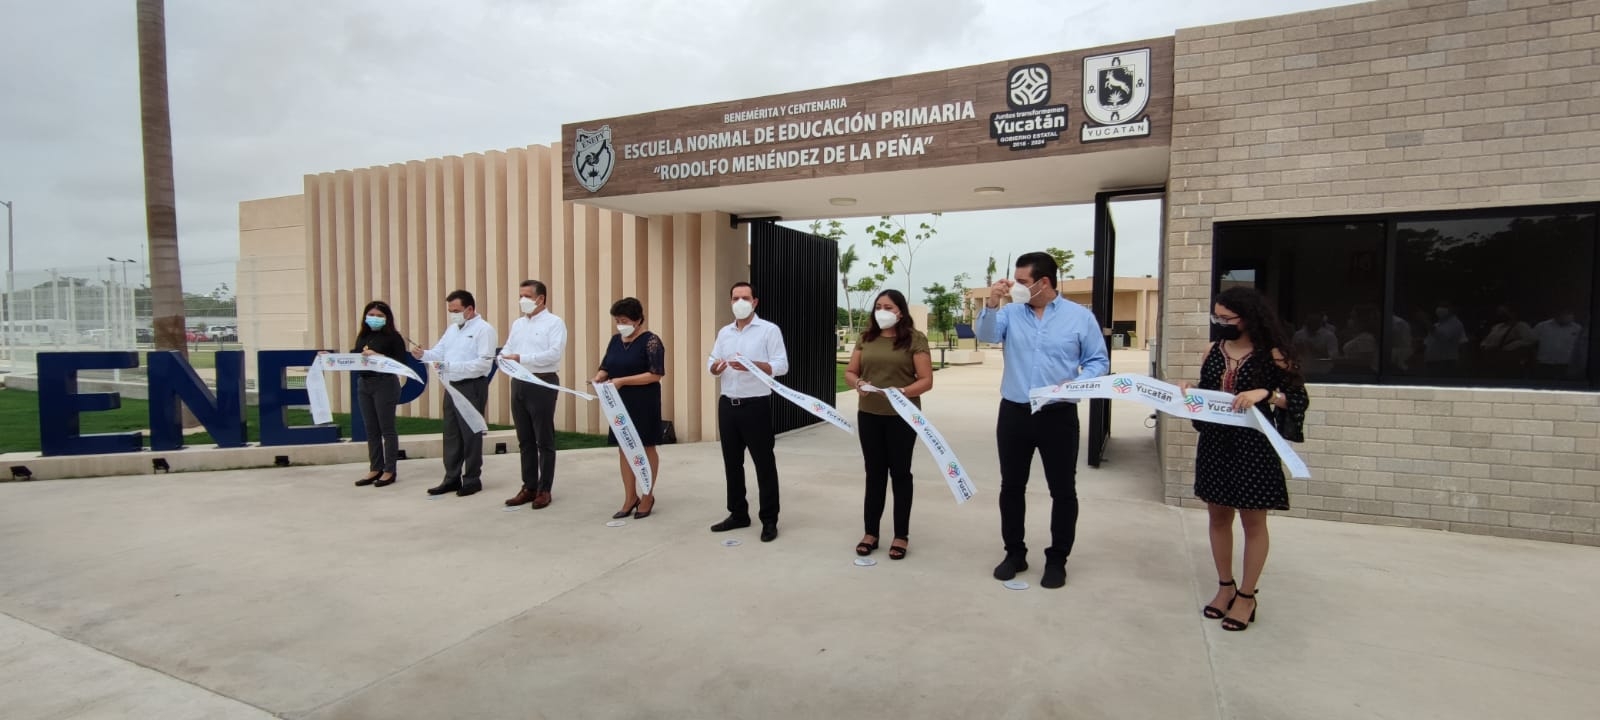 Mauricio Vila inaugura la Escuela Normal de Educación Primaria en Mérida